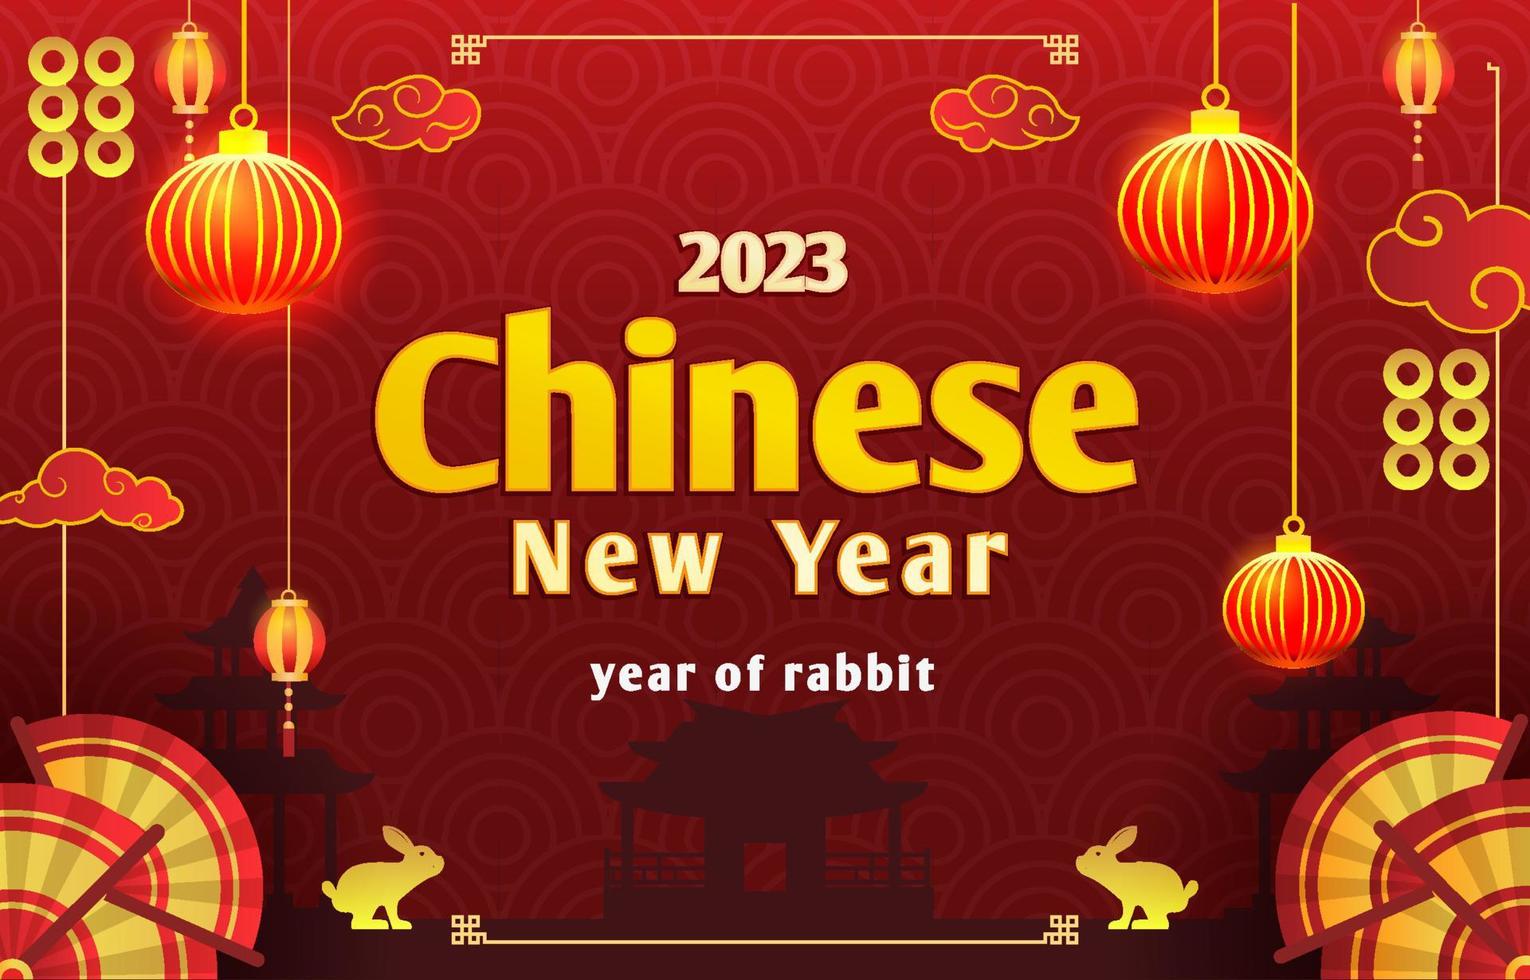 kinesiskt nyår bakgrund vektor